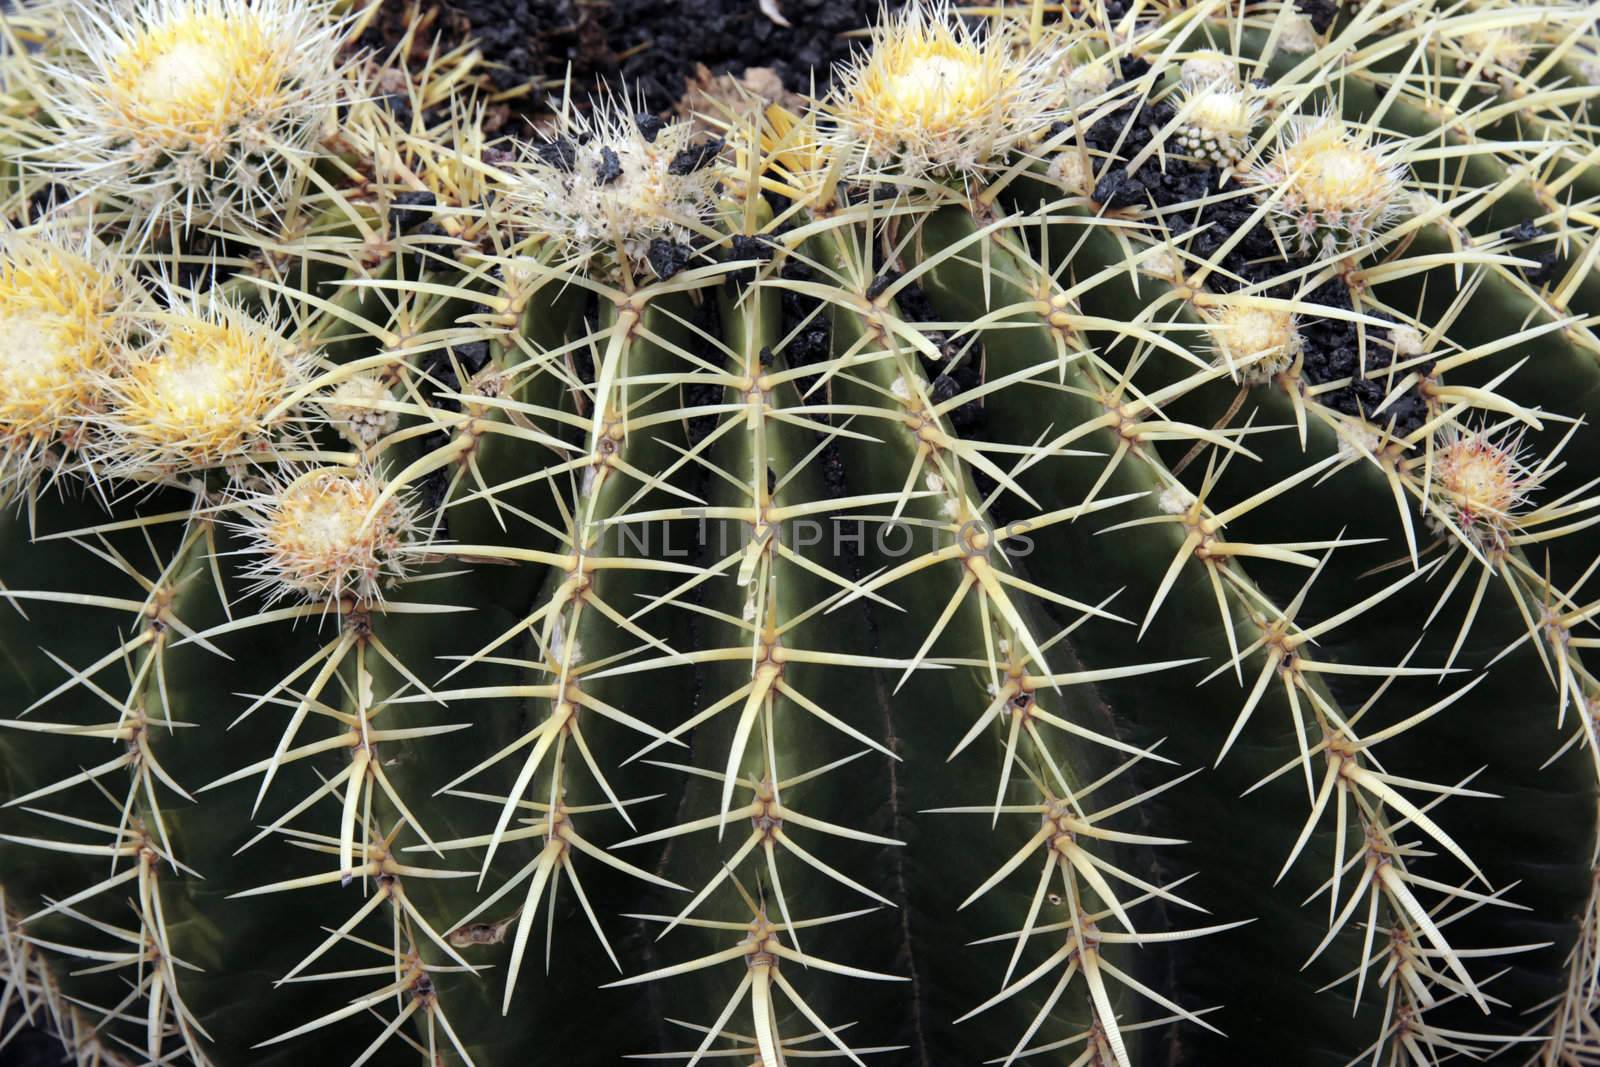 a close up of a round cactus